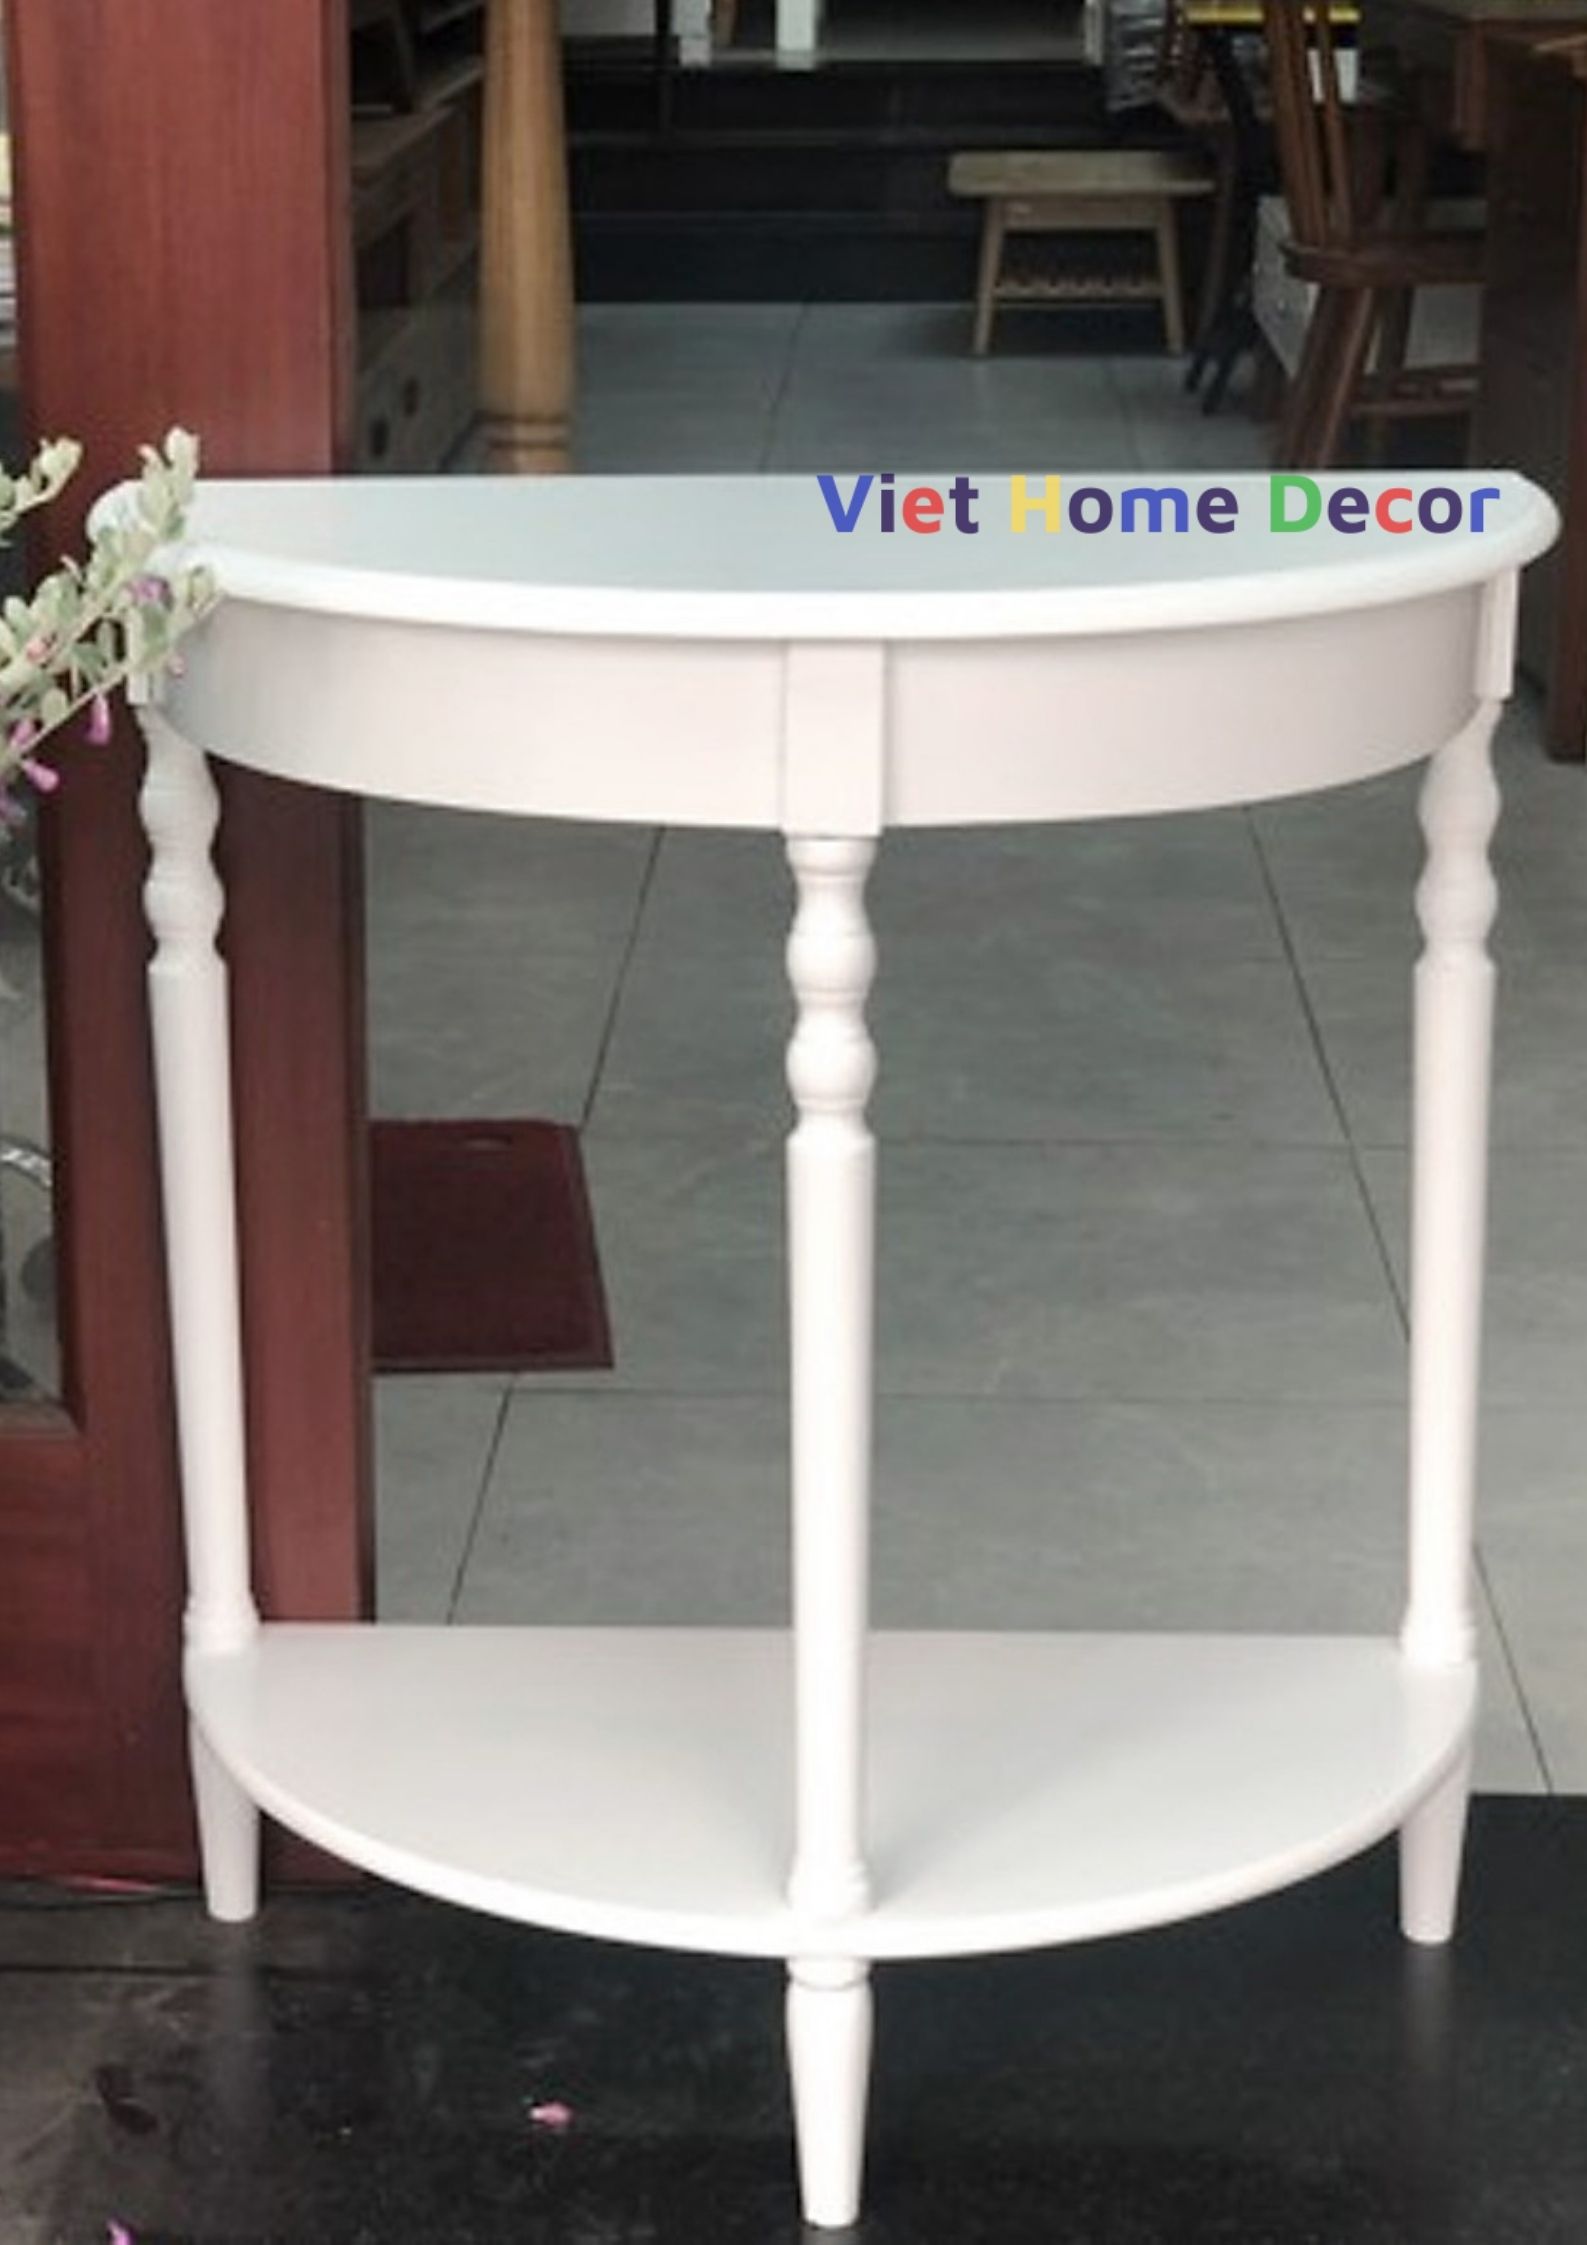 Bàn console bán nguyệt chân tiện màu trắng 4403 - Thương hiệu Viet Home Decor